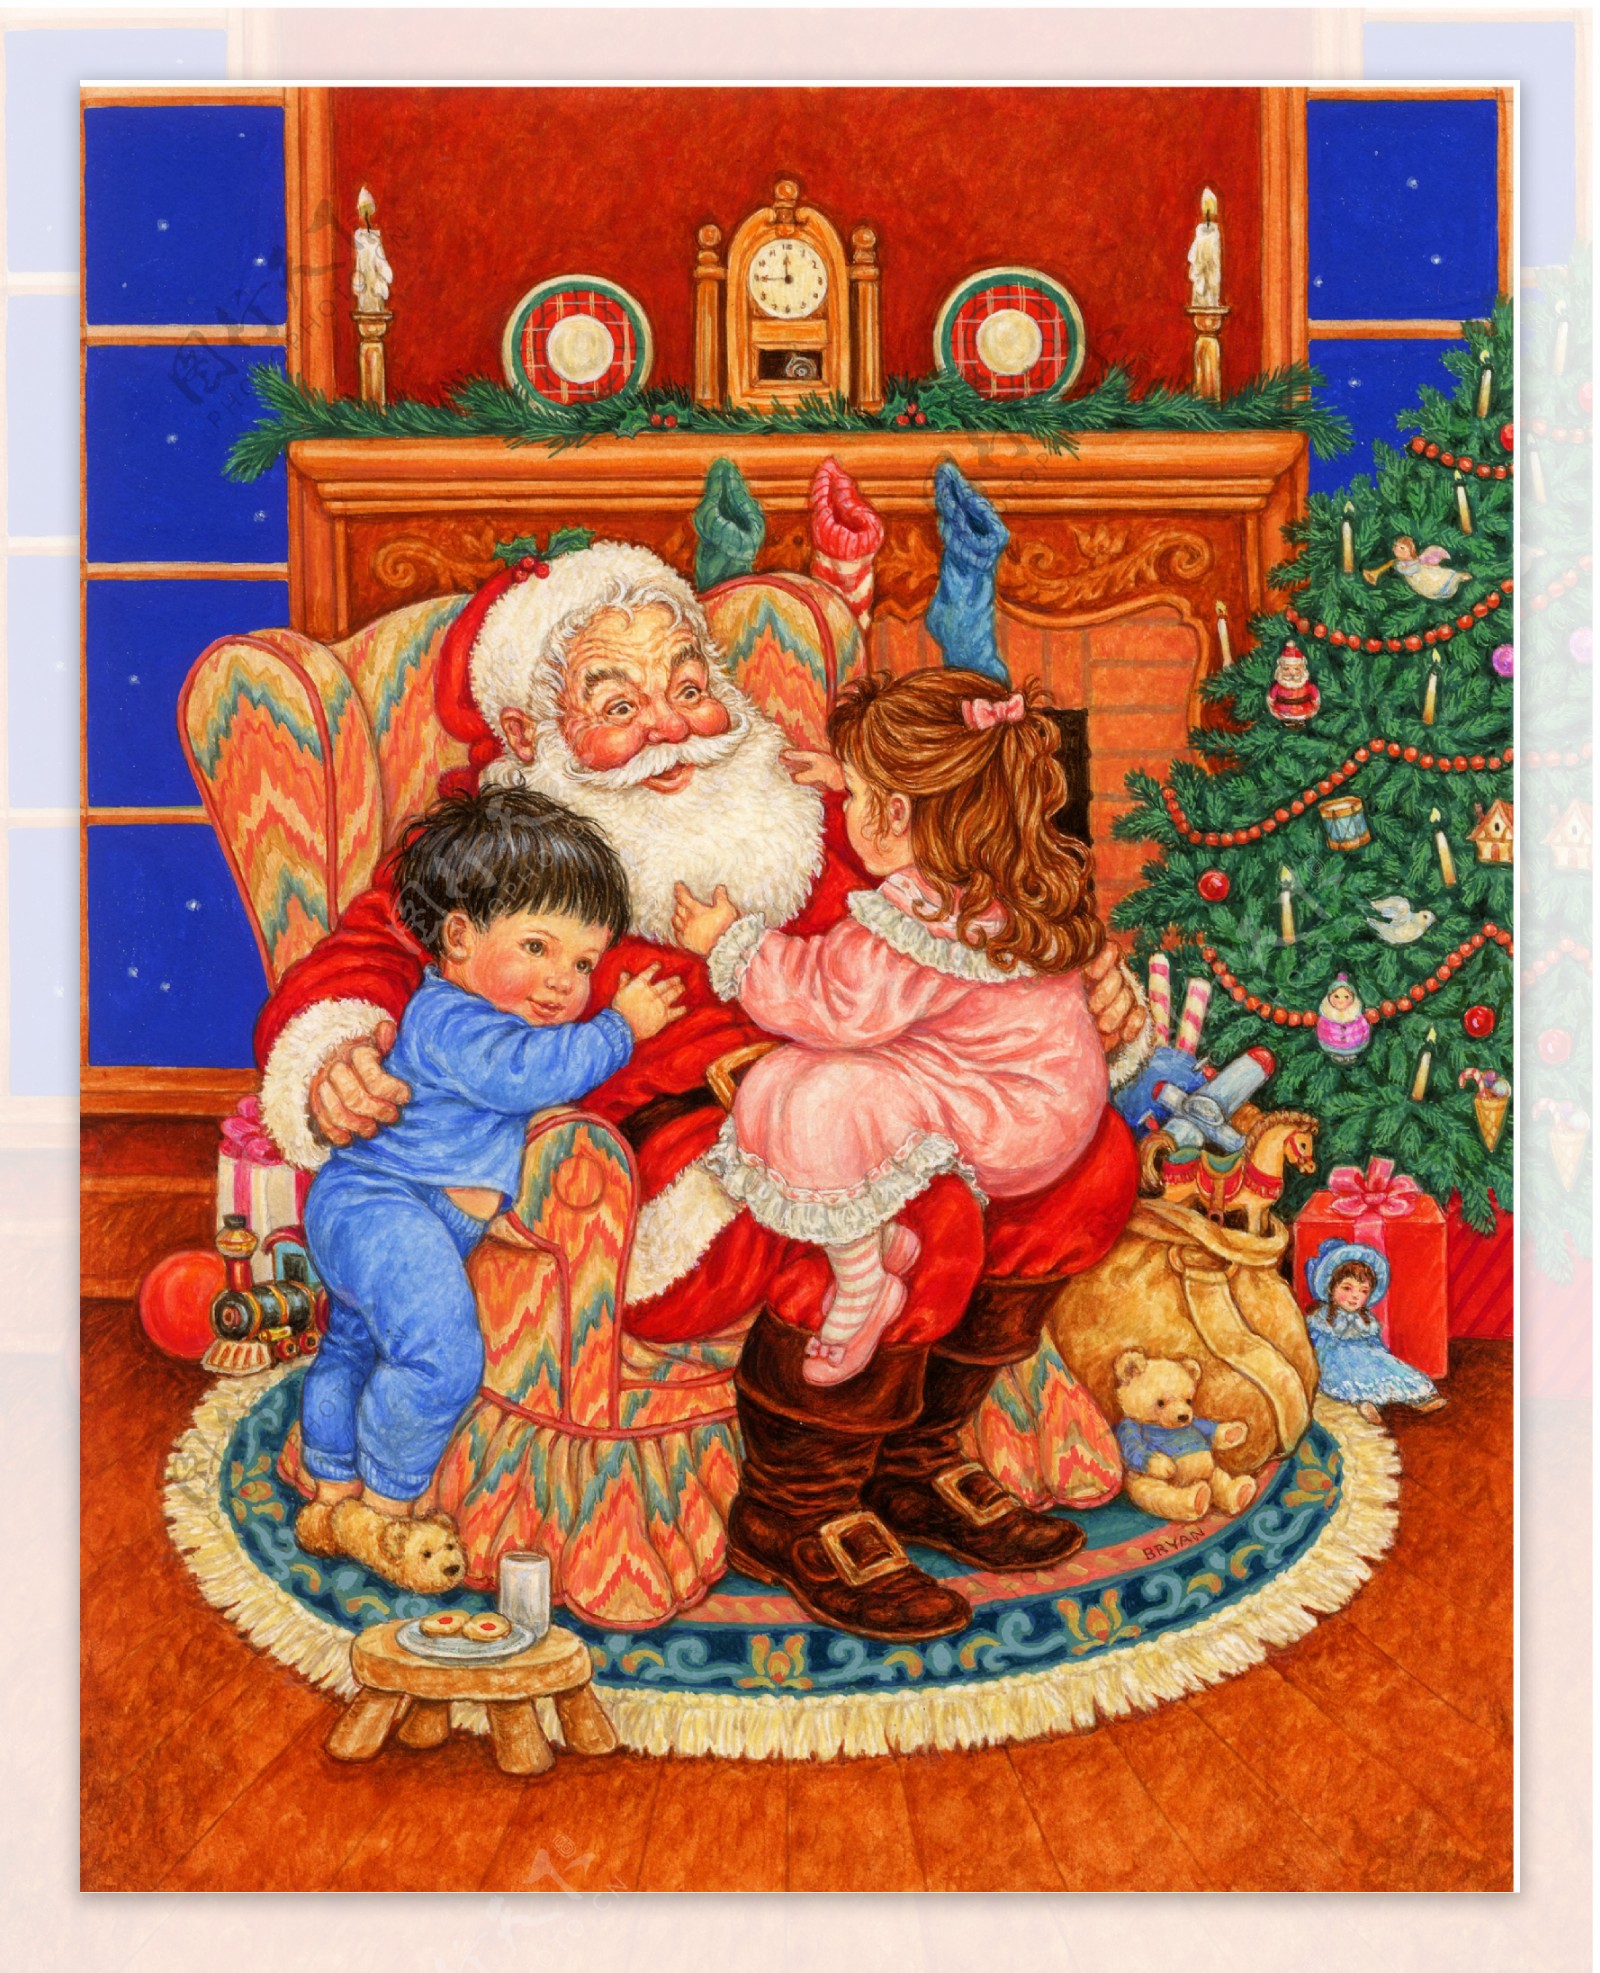 抱小孩的圣诞老人图片